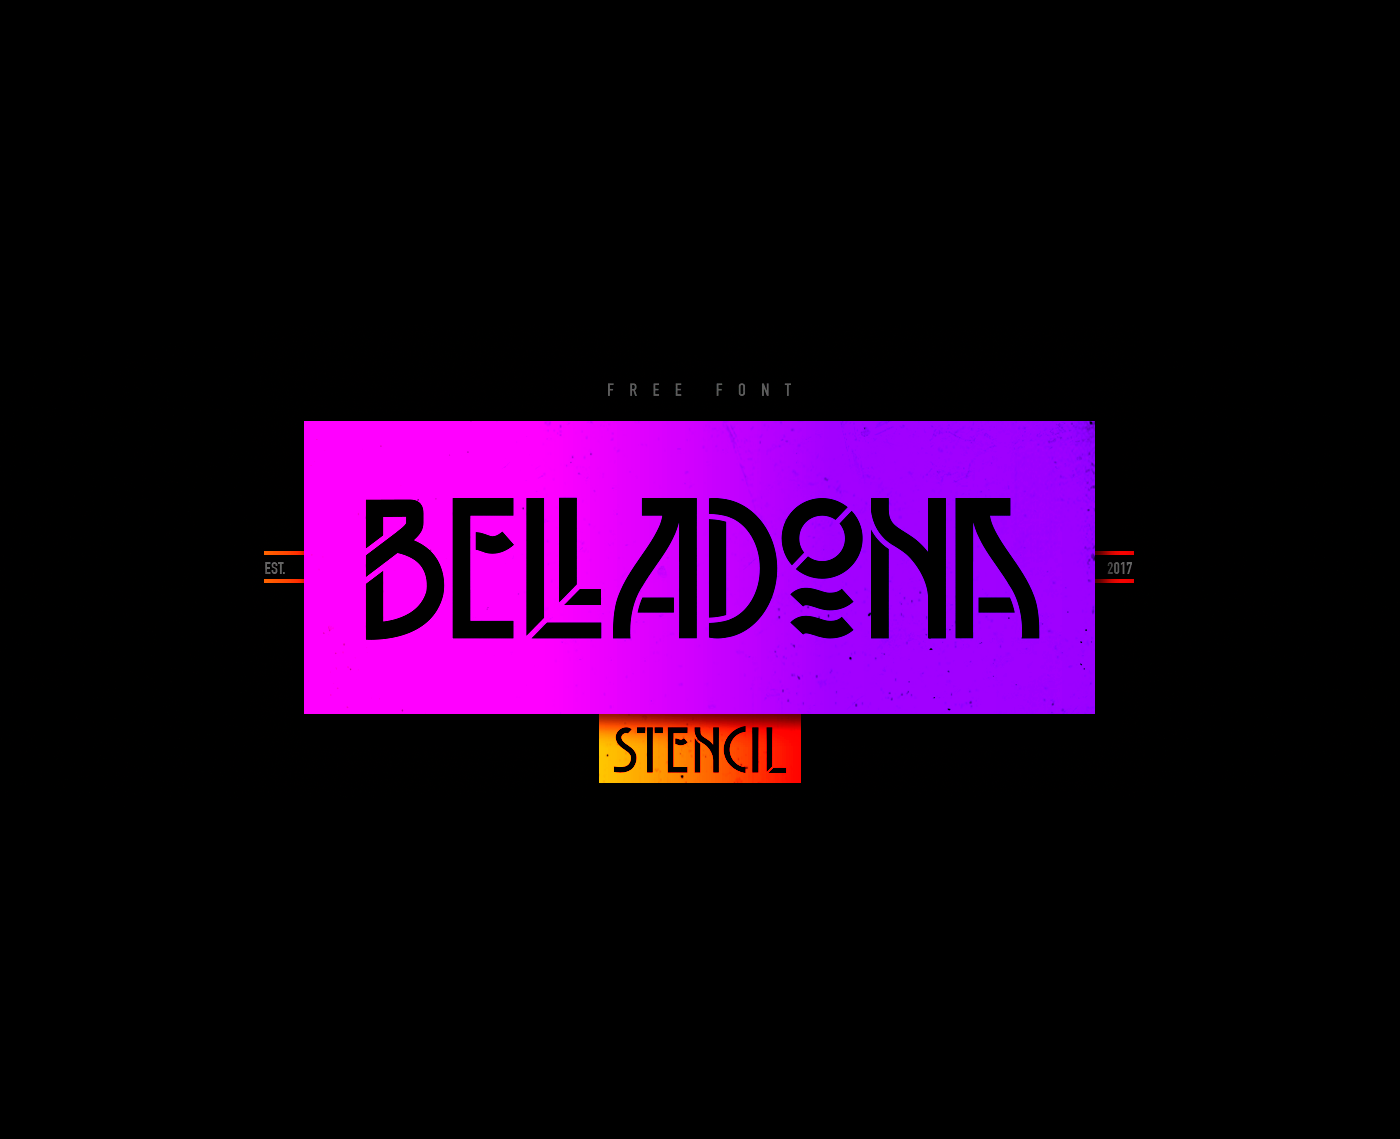 Belladona Stencil Font